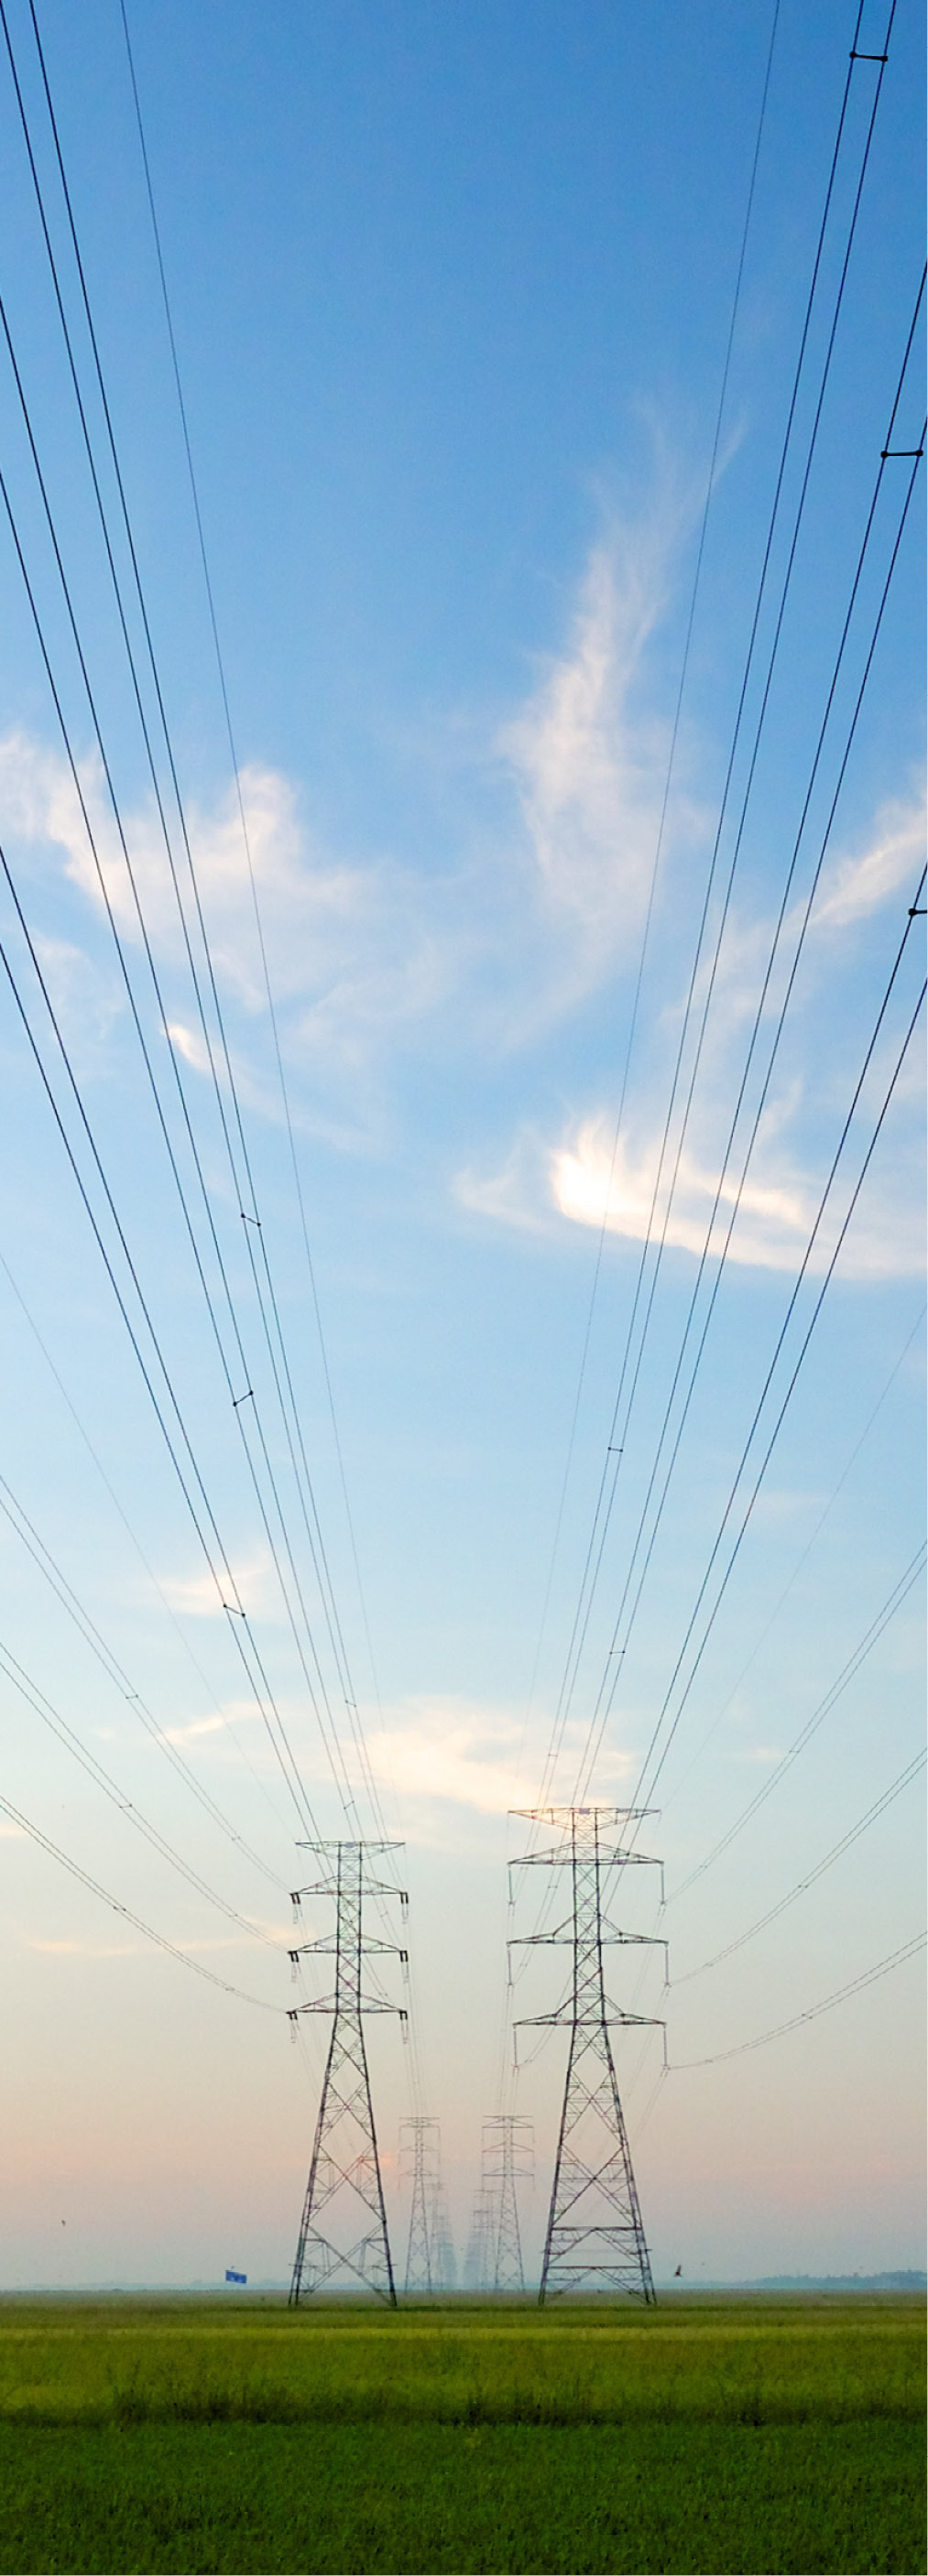 Des lignes de transport d’électricité disparaissent à l’horizon.